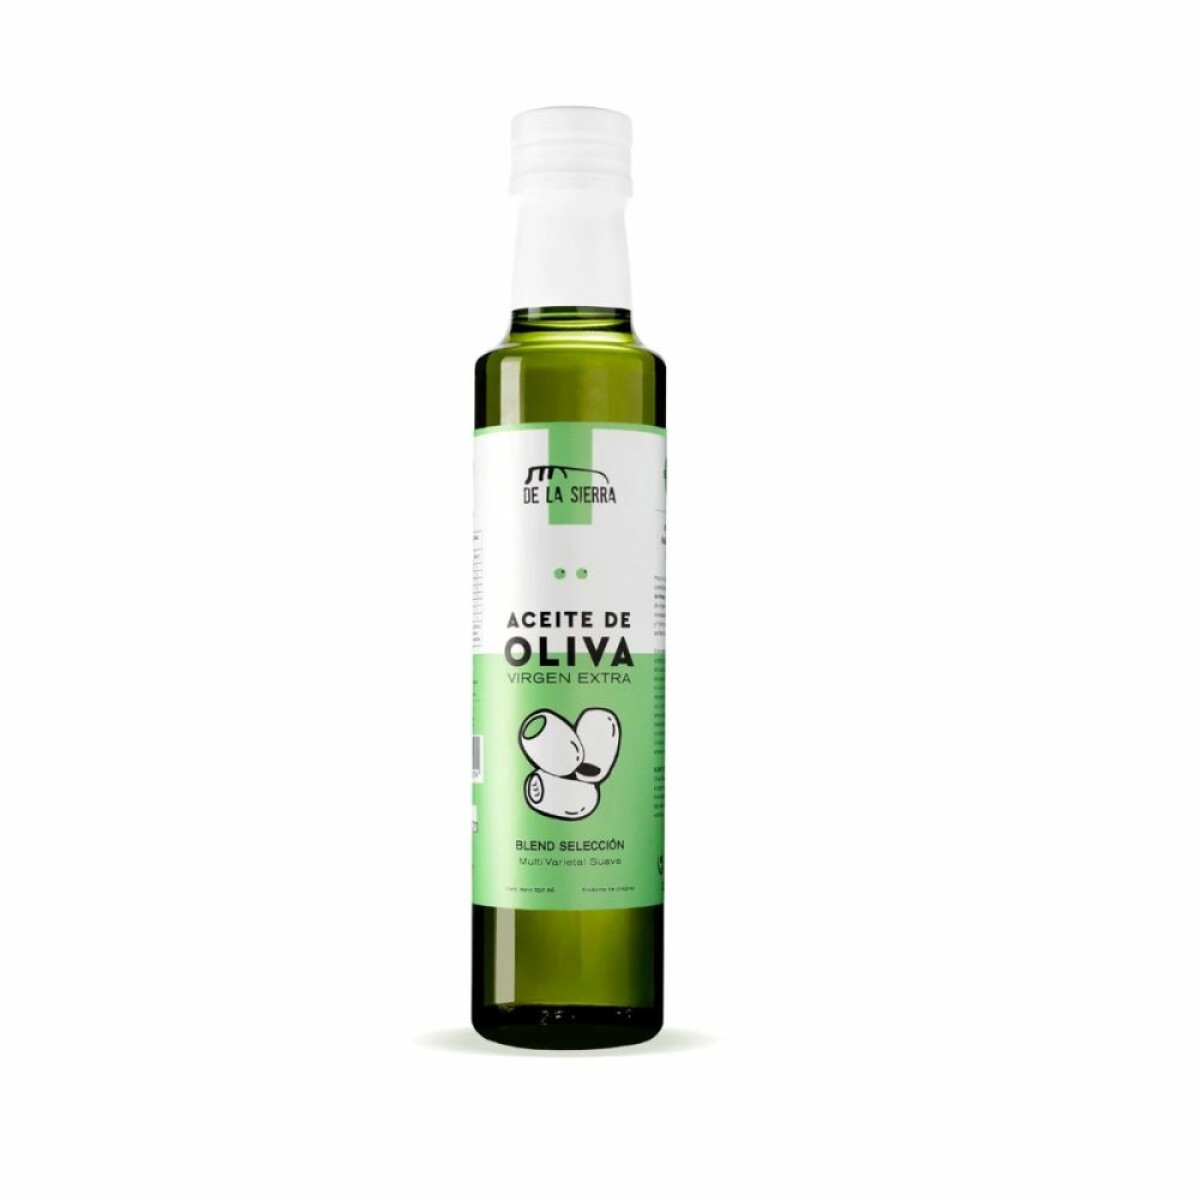 Aceite de oliva blend selección 250ml De la Sierra 